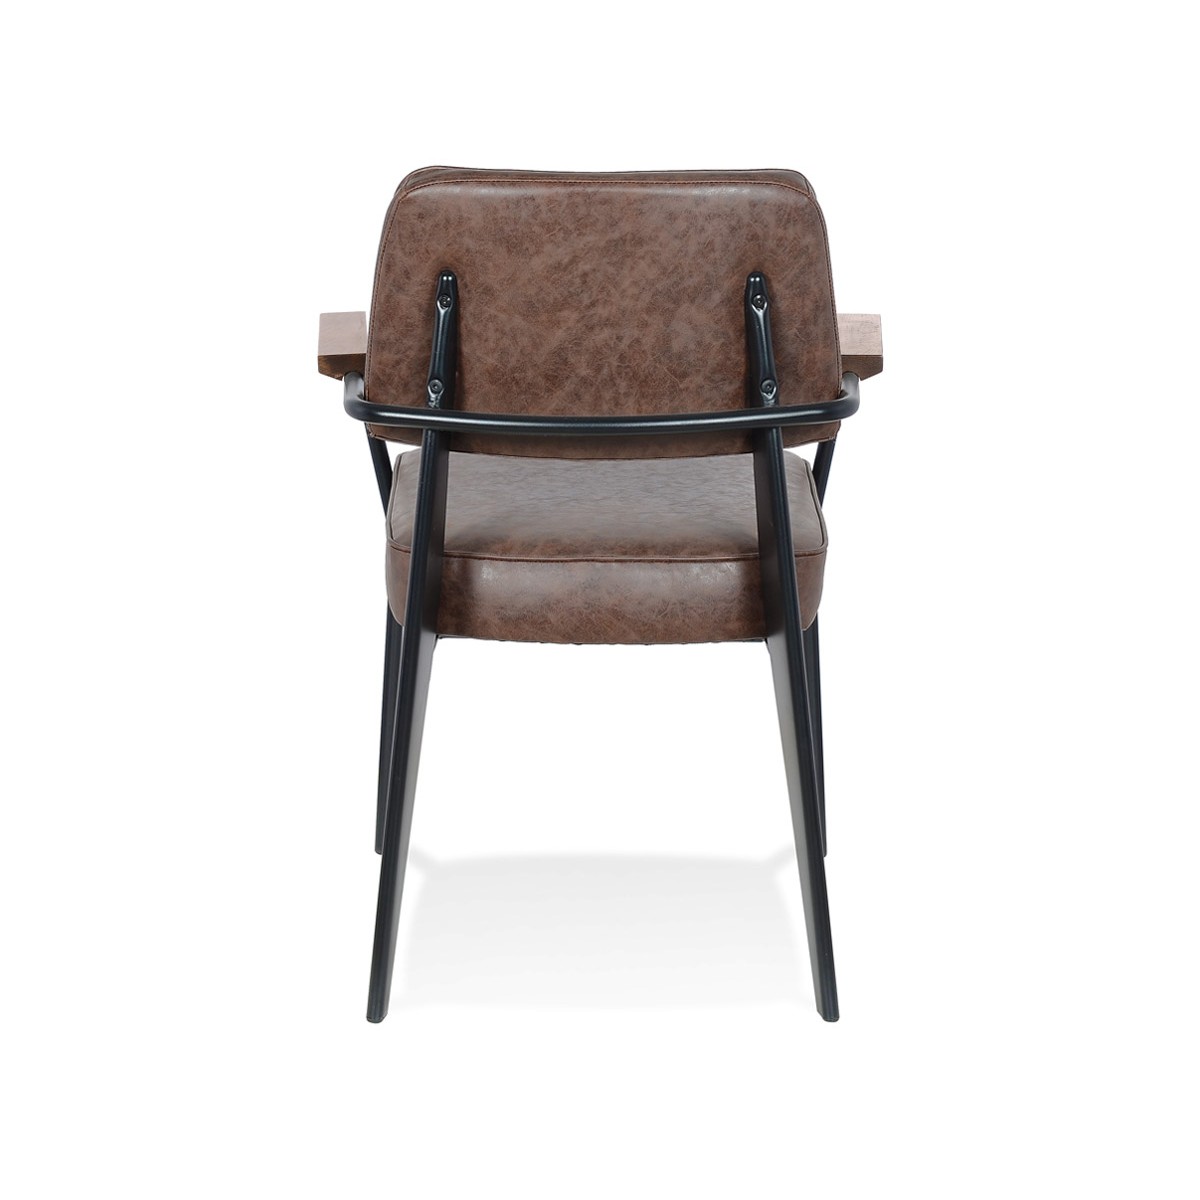 Vintage-Stuhl mit hochwertigen Linien und schicken Materialien